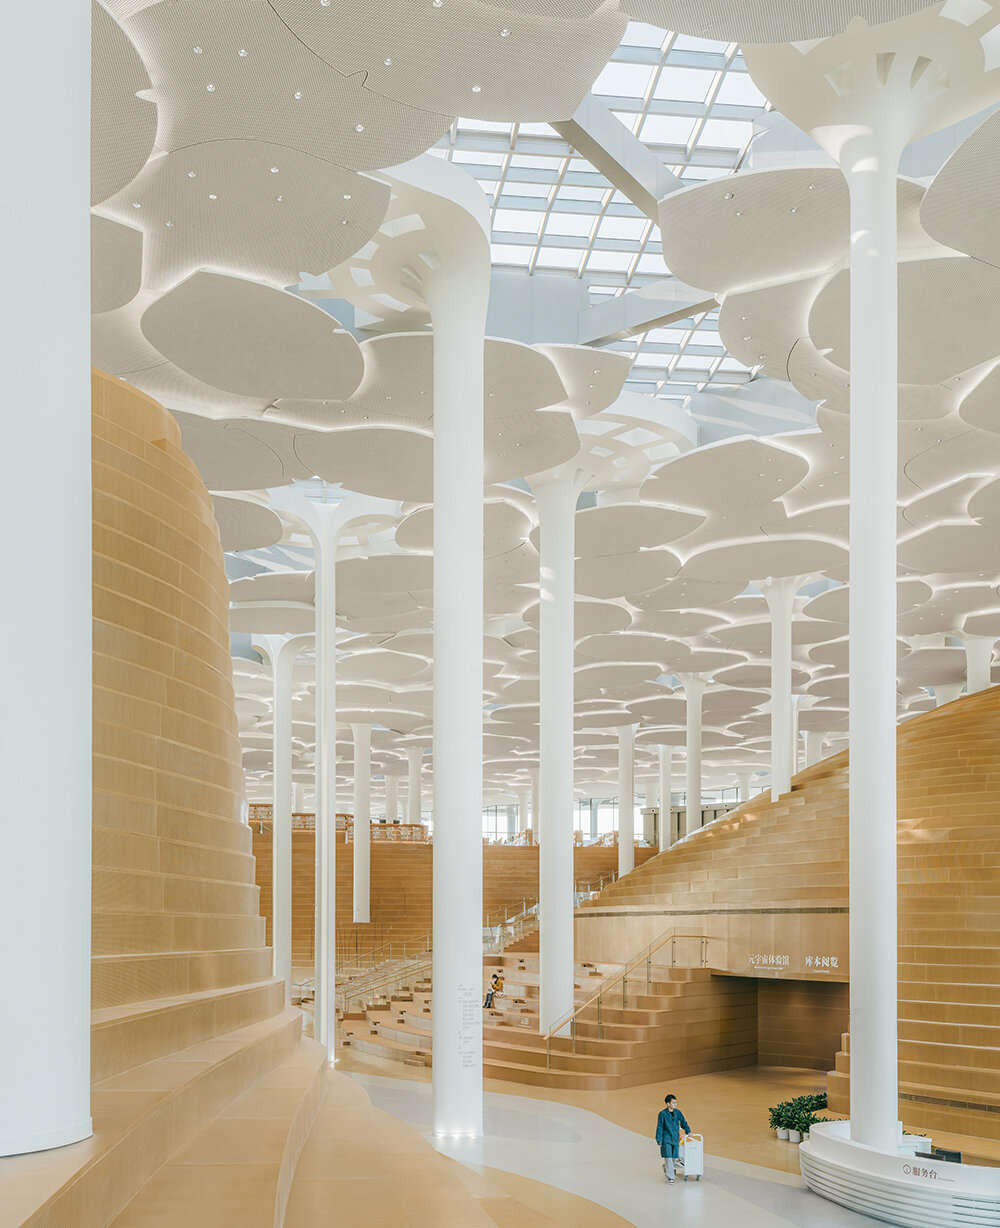 مكتبة مدينة بكين التي صممها سنوهيتا تفتح أبوابها للجمهور، وتكشف عن التلال والوديان المنحوتة